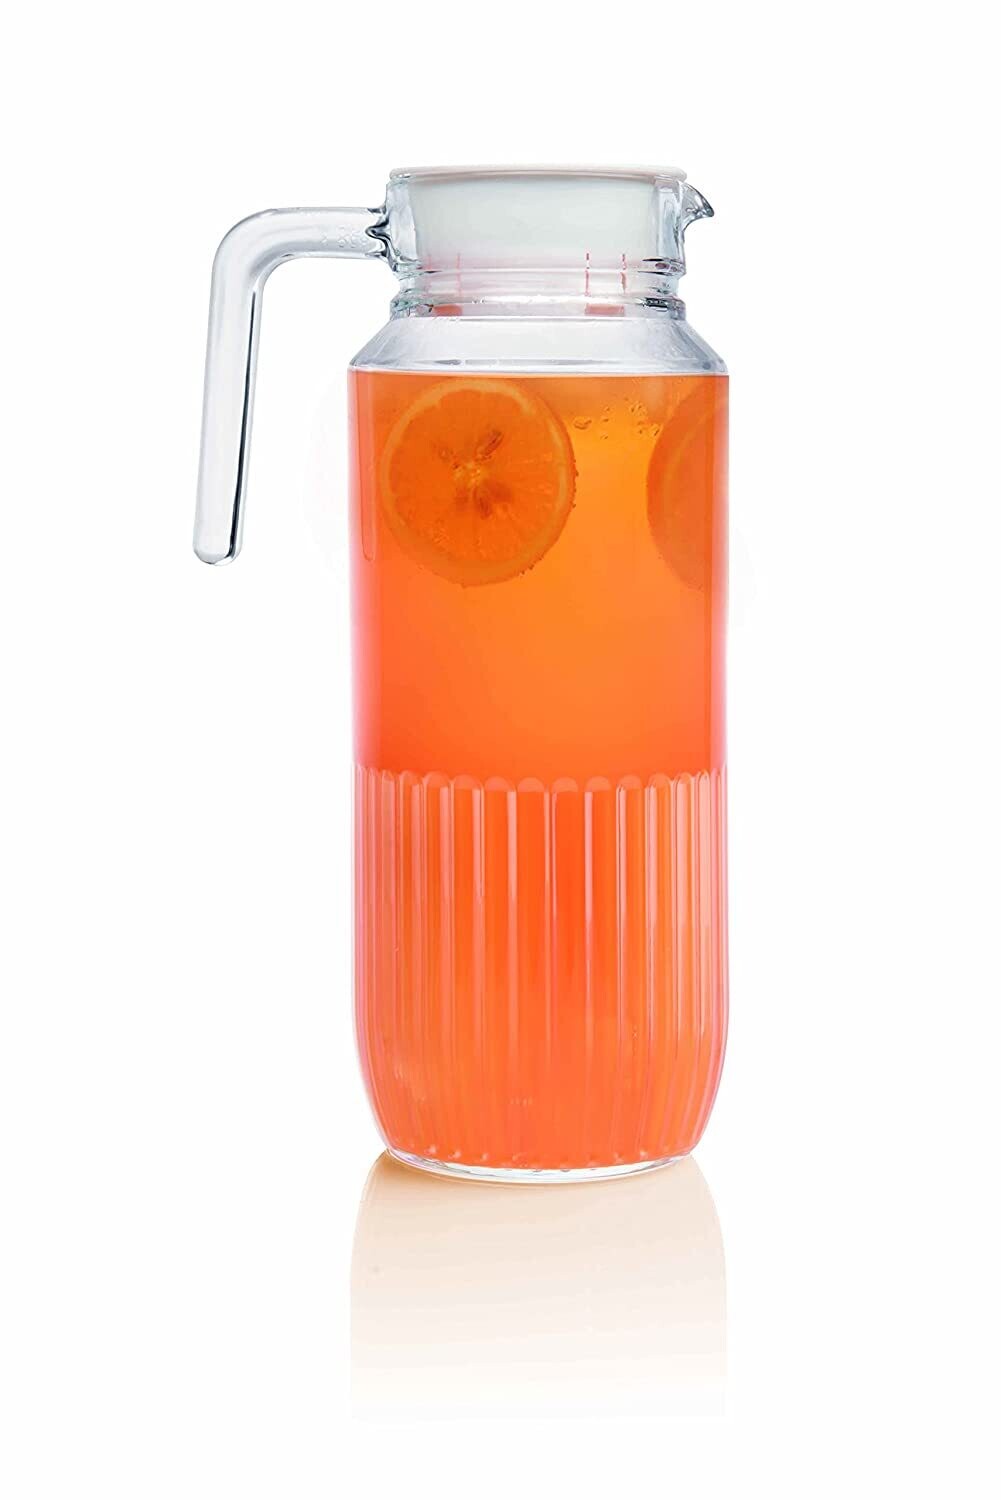 Luminarc Gridz fridge jug with lid 1.3L